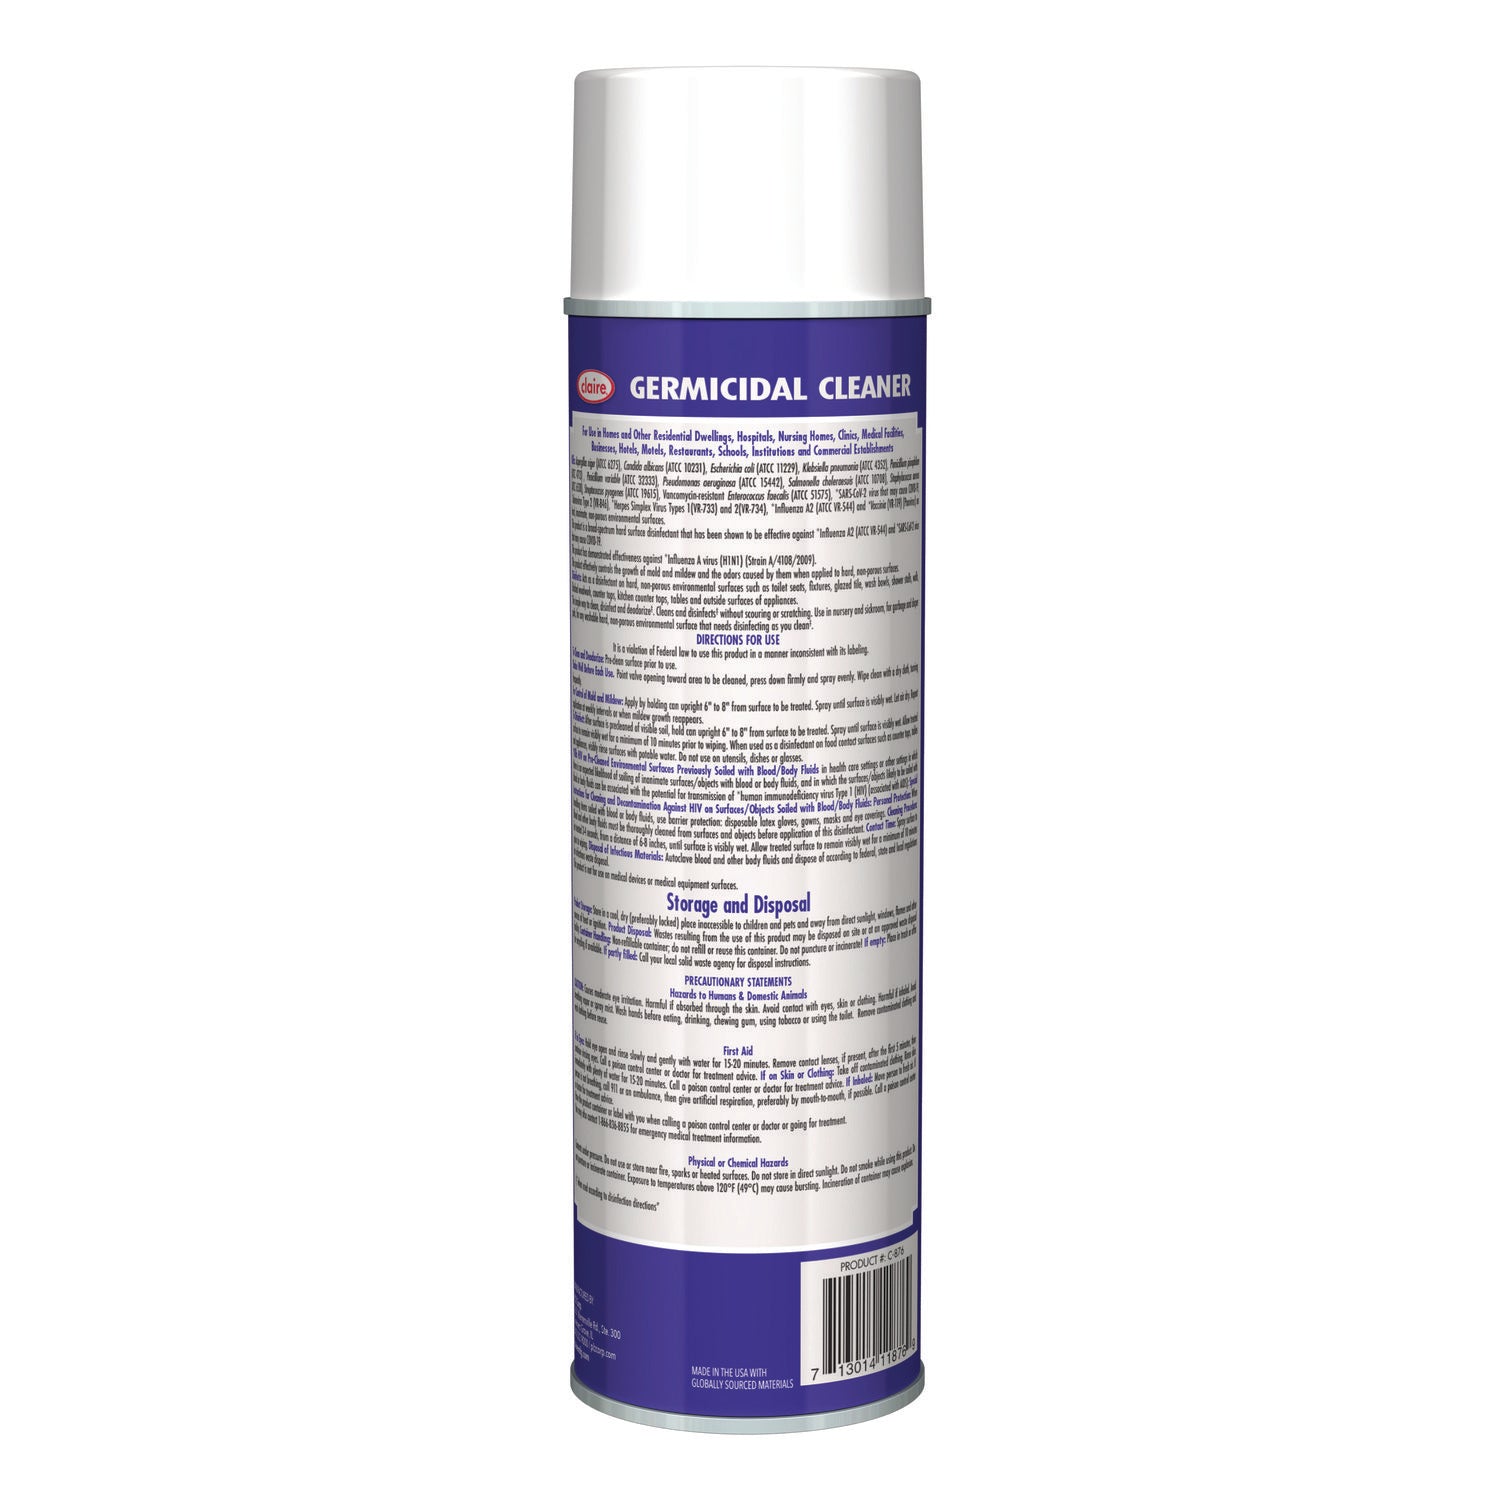 germicidal-cleaner-country-fresh-scent-19-oz-aerosol-spray-12-carton_cgc876 - 2